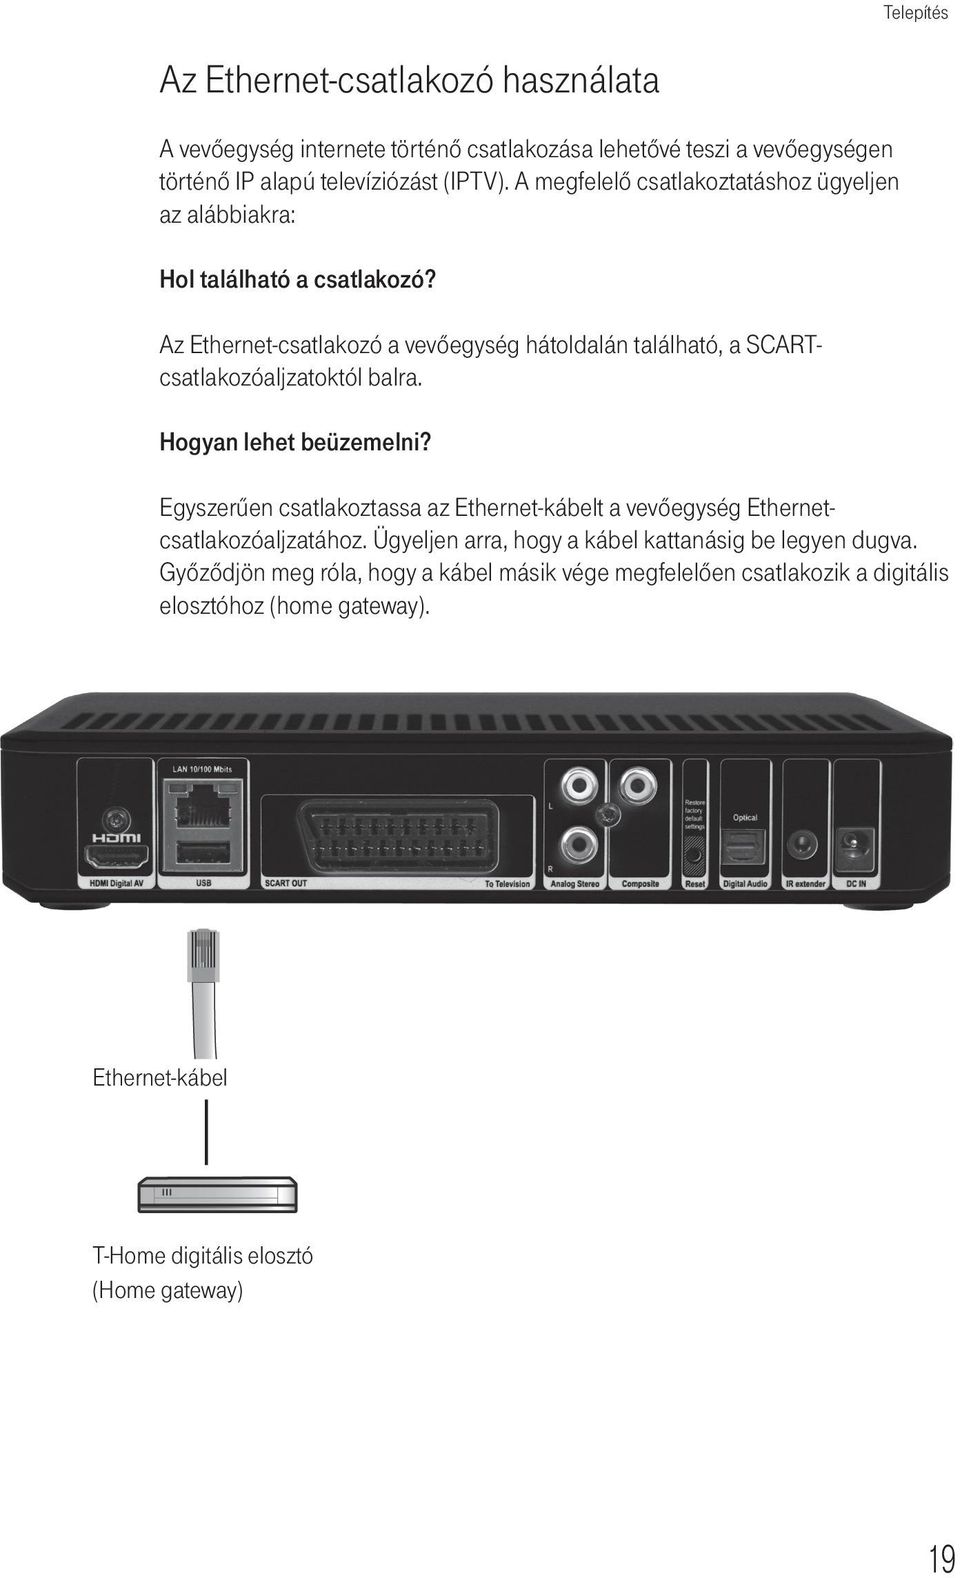 Cisco Cis2001 T-Home IPTV-vevőegység. Kezelési útmutató - PDF Free Download